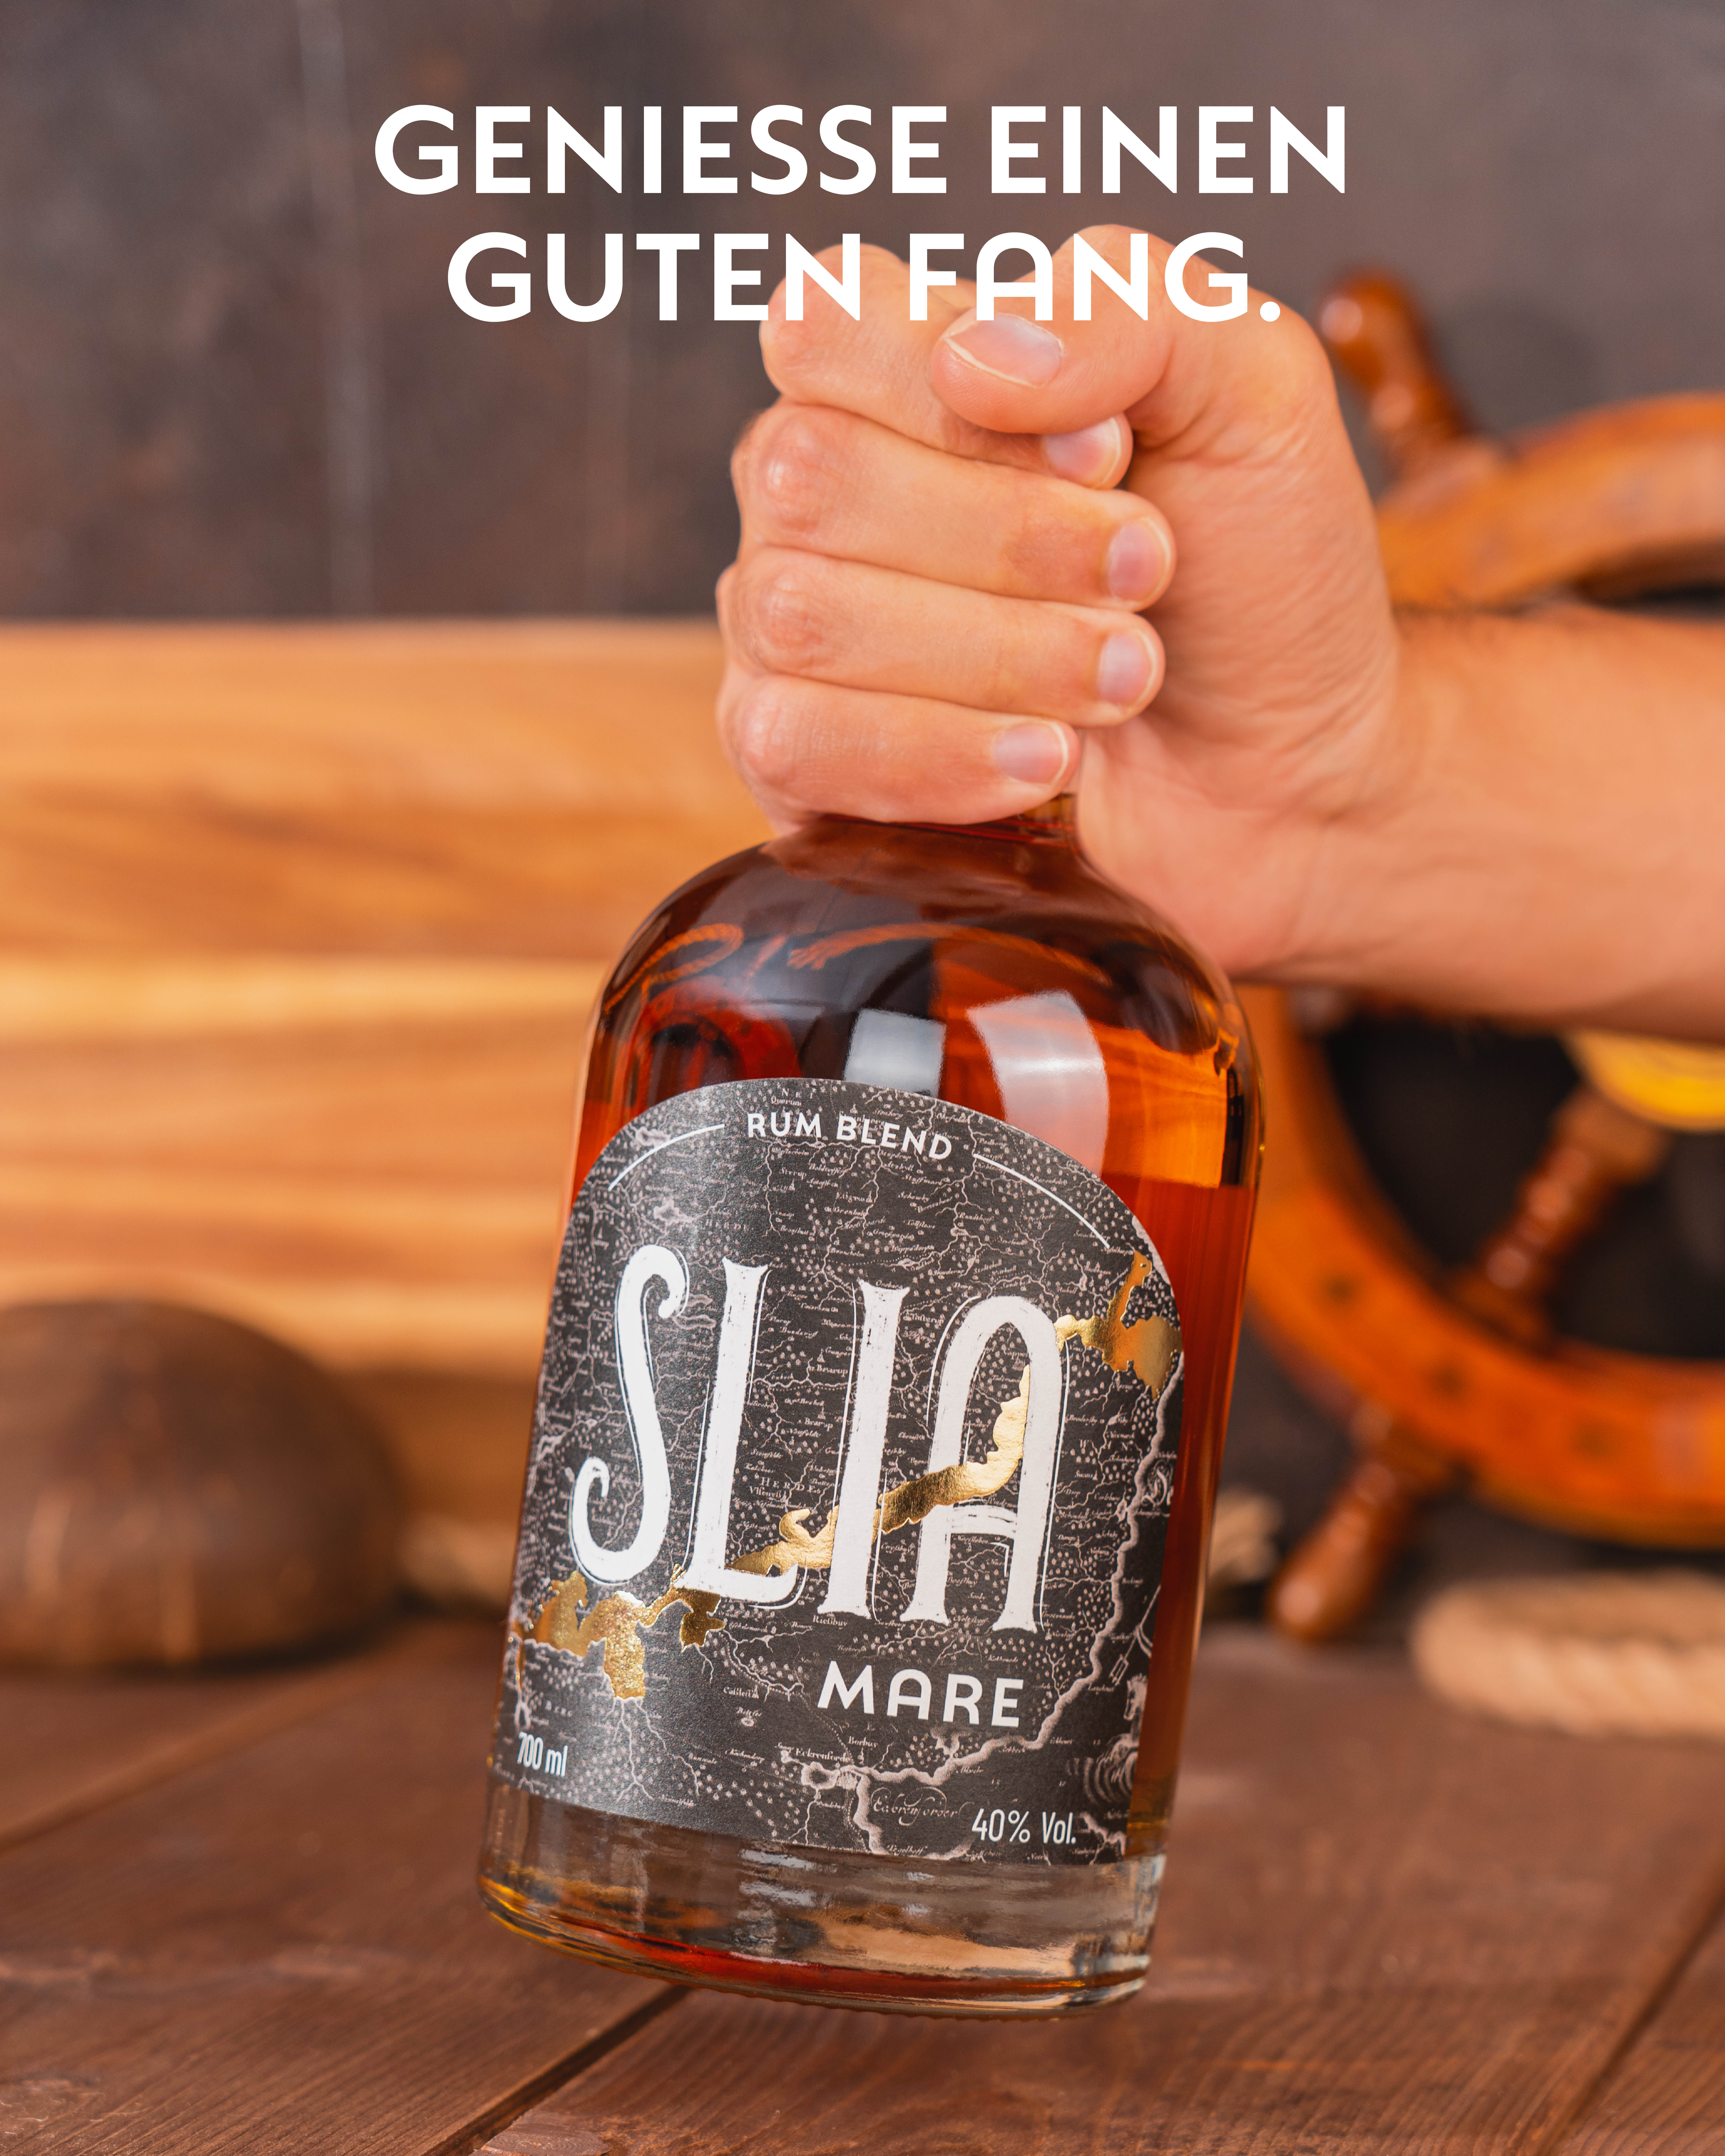 SLIA Mare Rum Blend 40% 0,7l